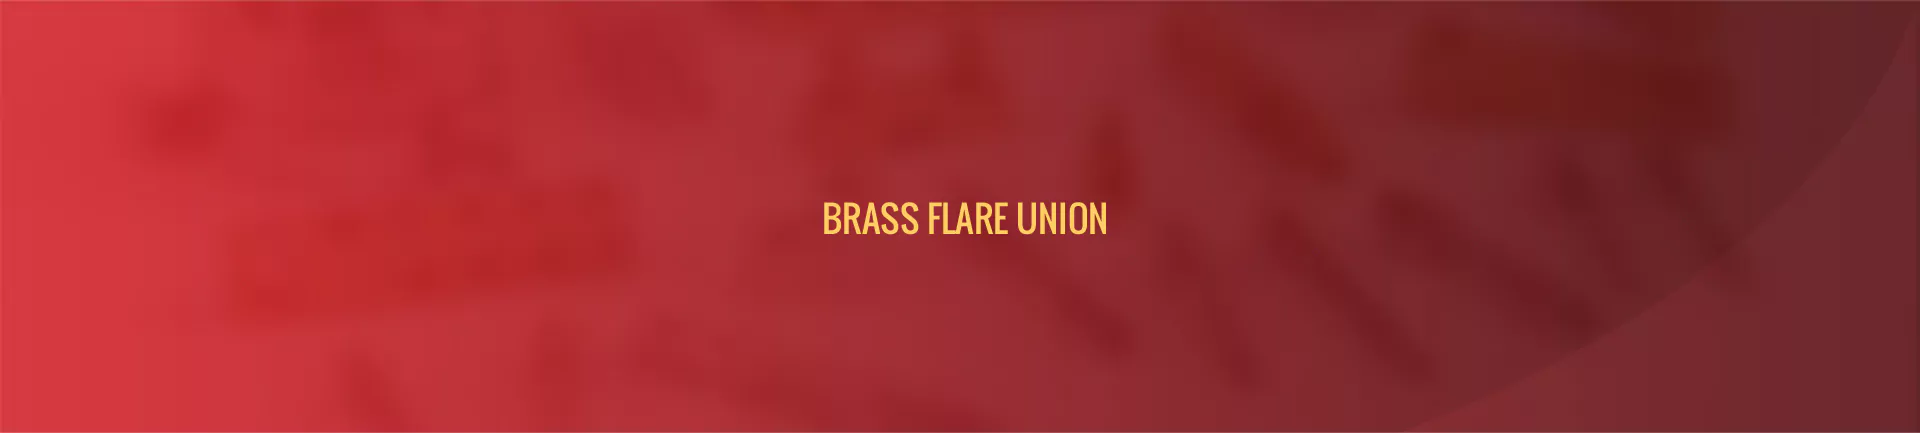 brass_flare_union-banner